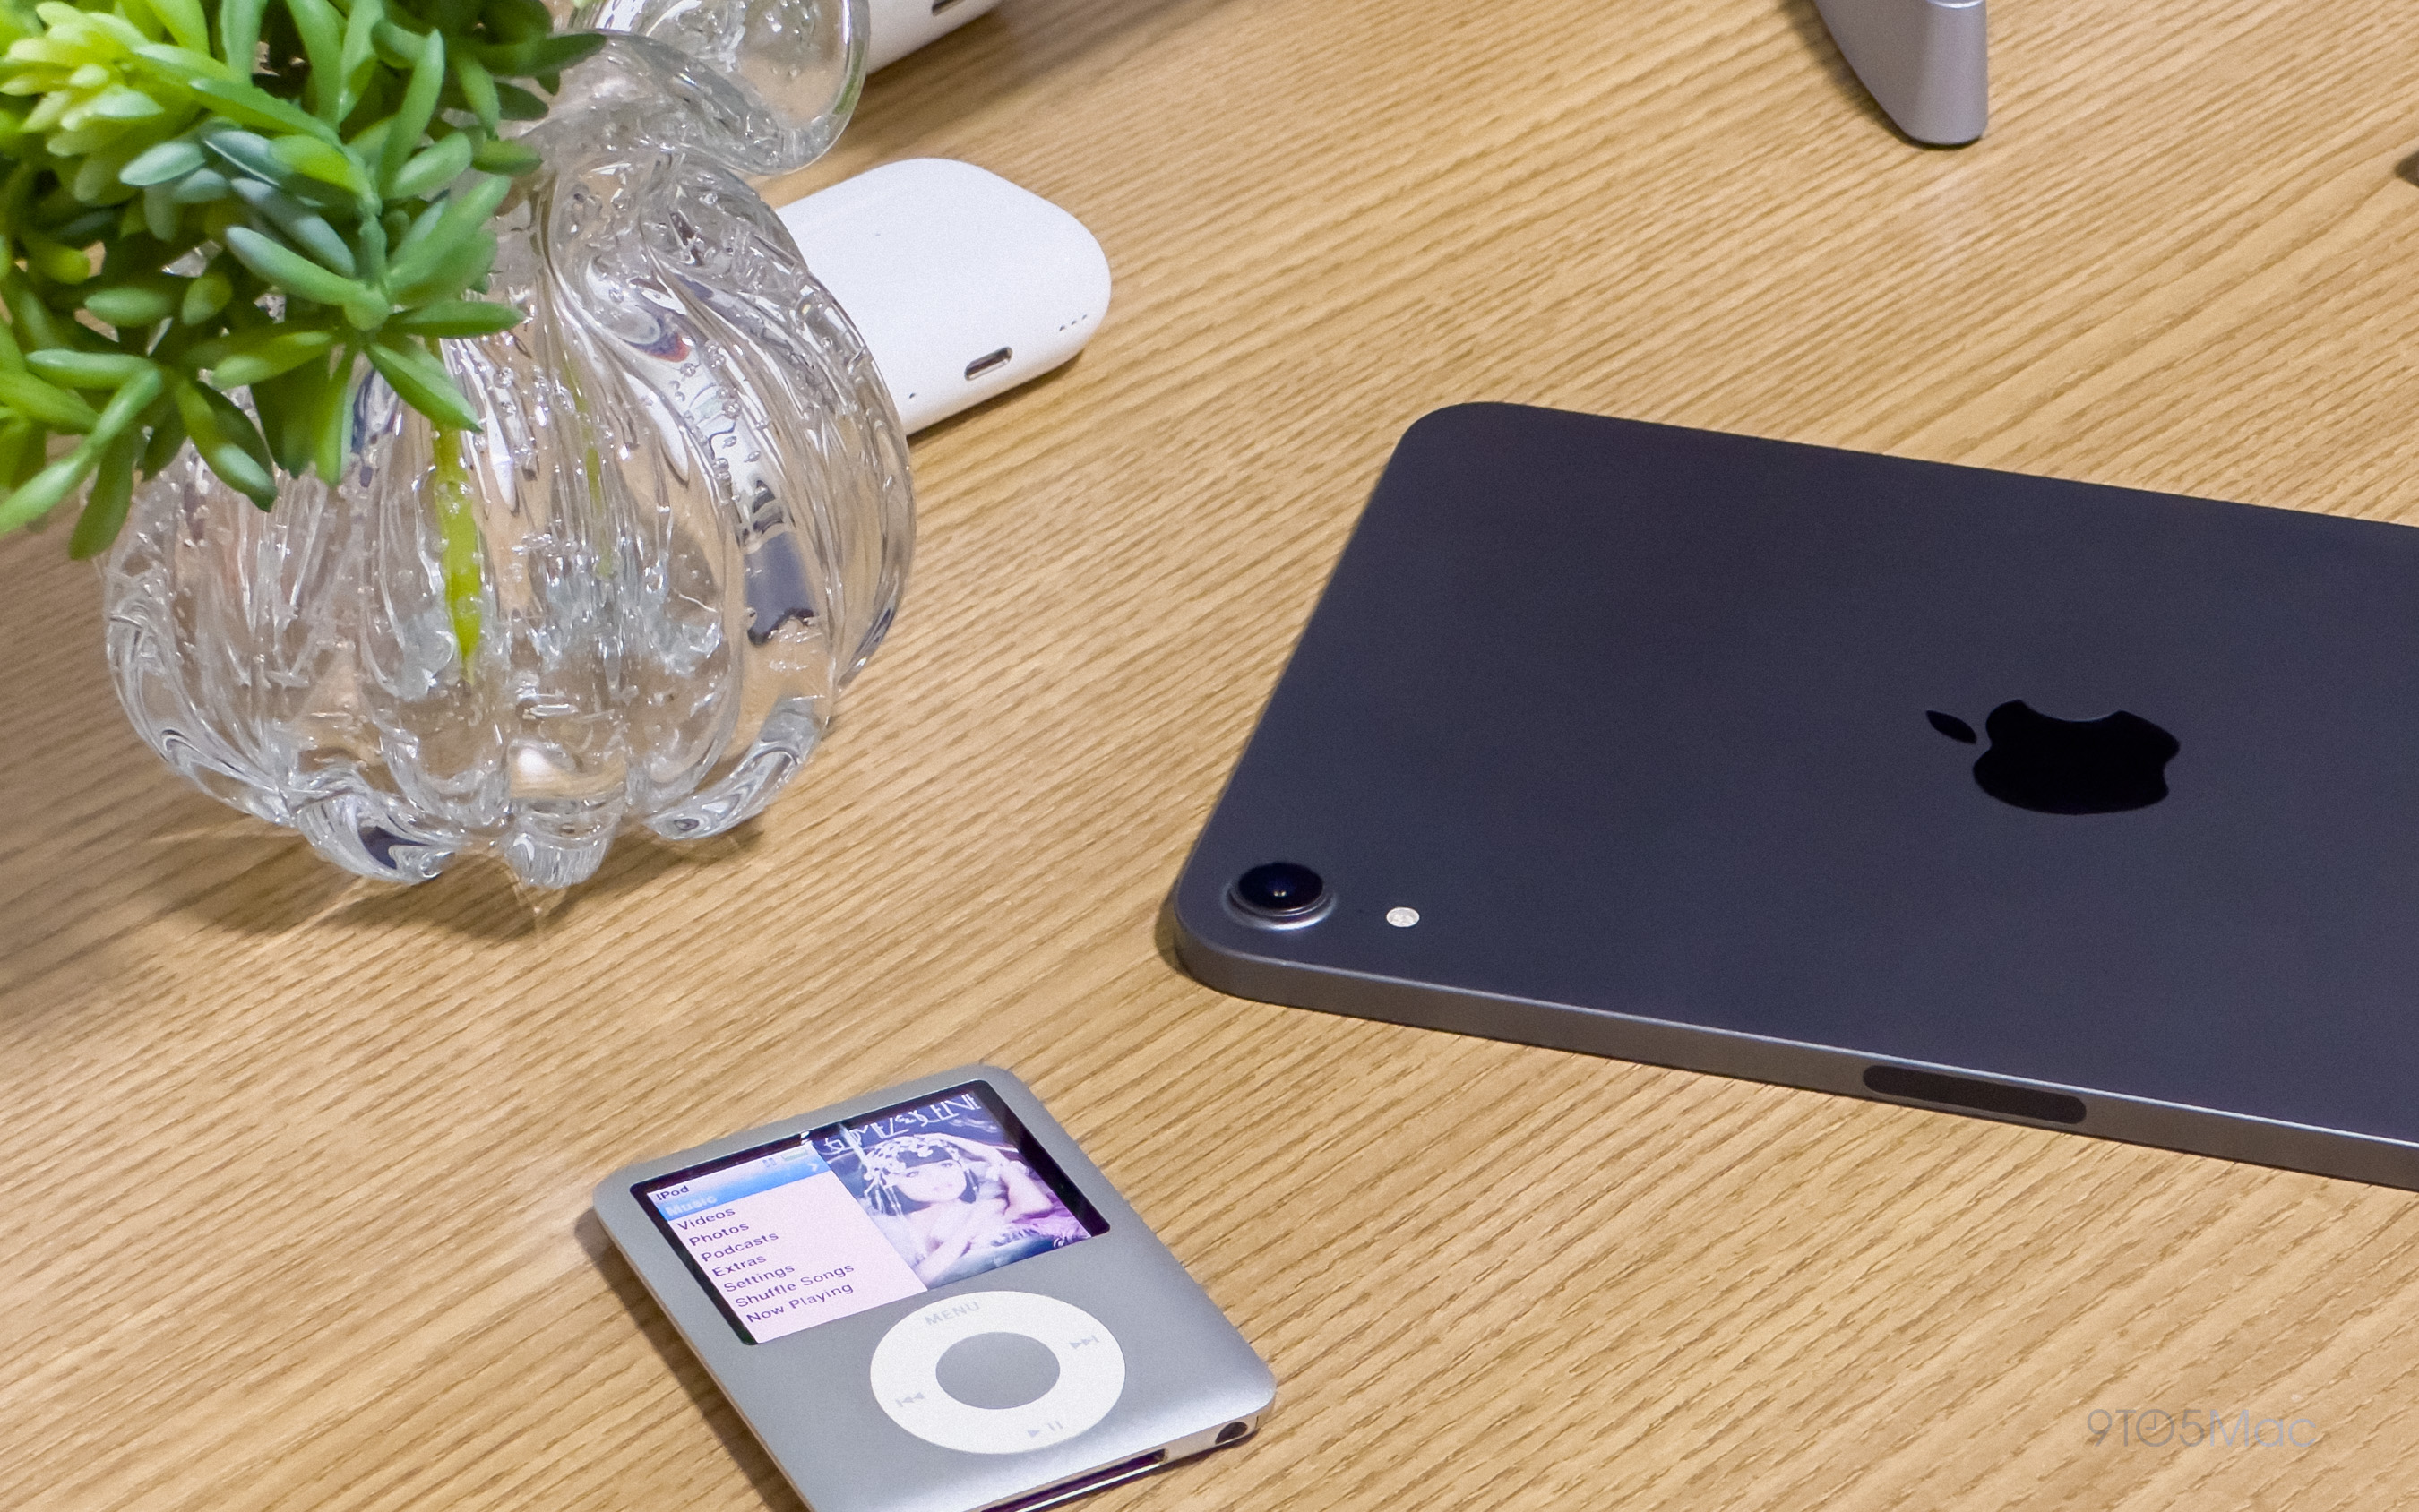 iPad mini 4 and iPod